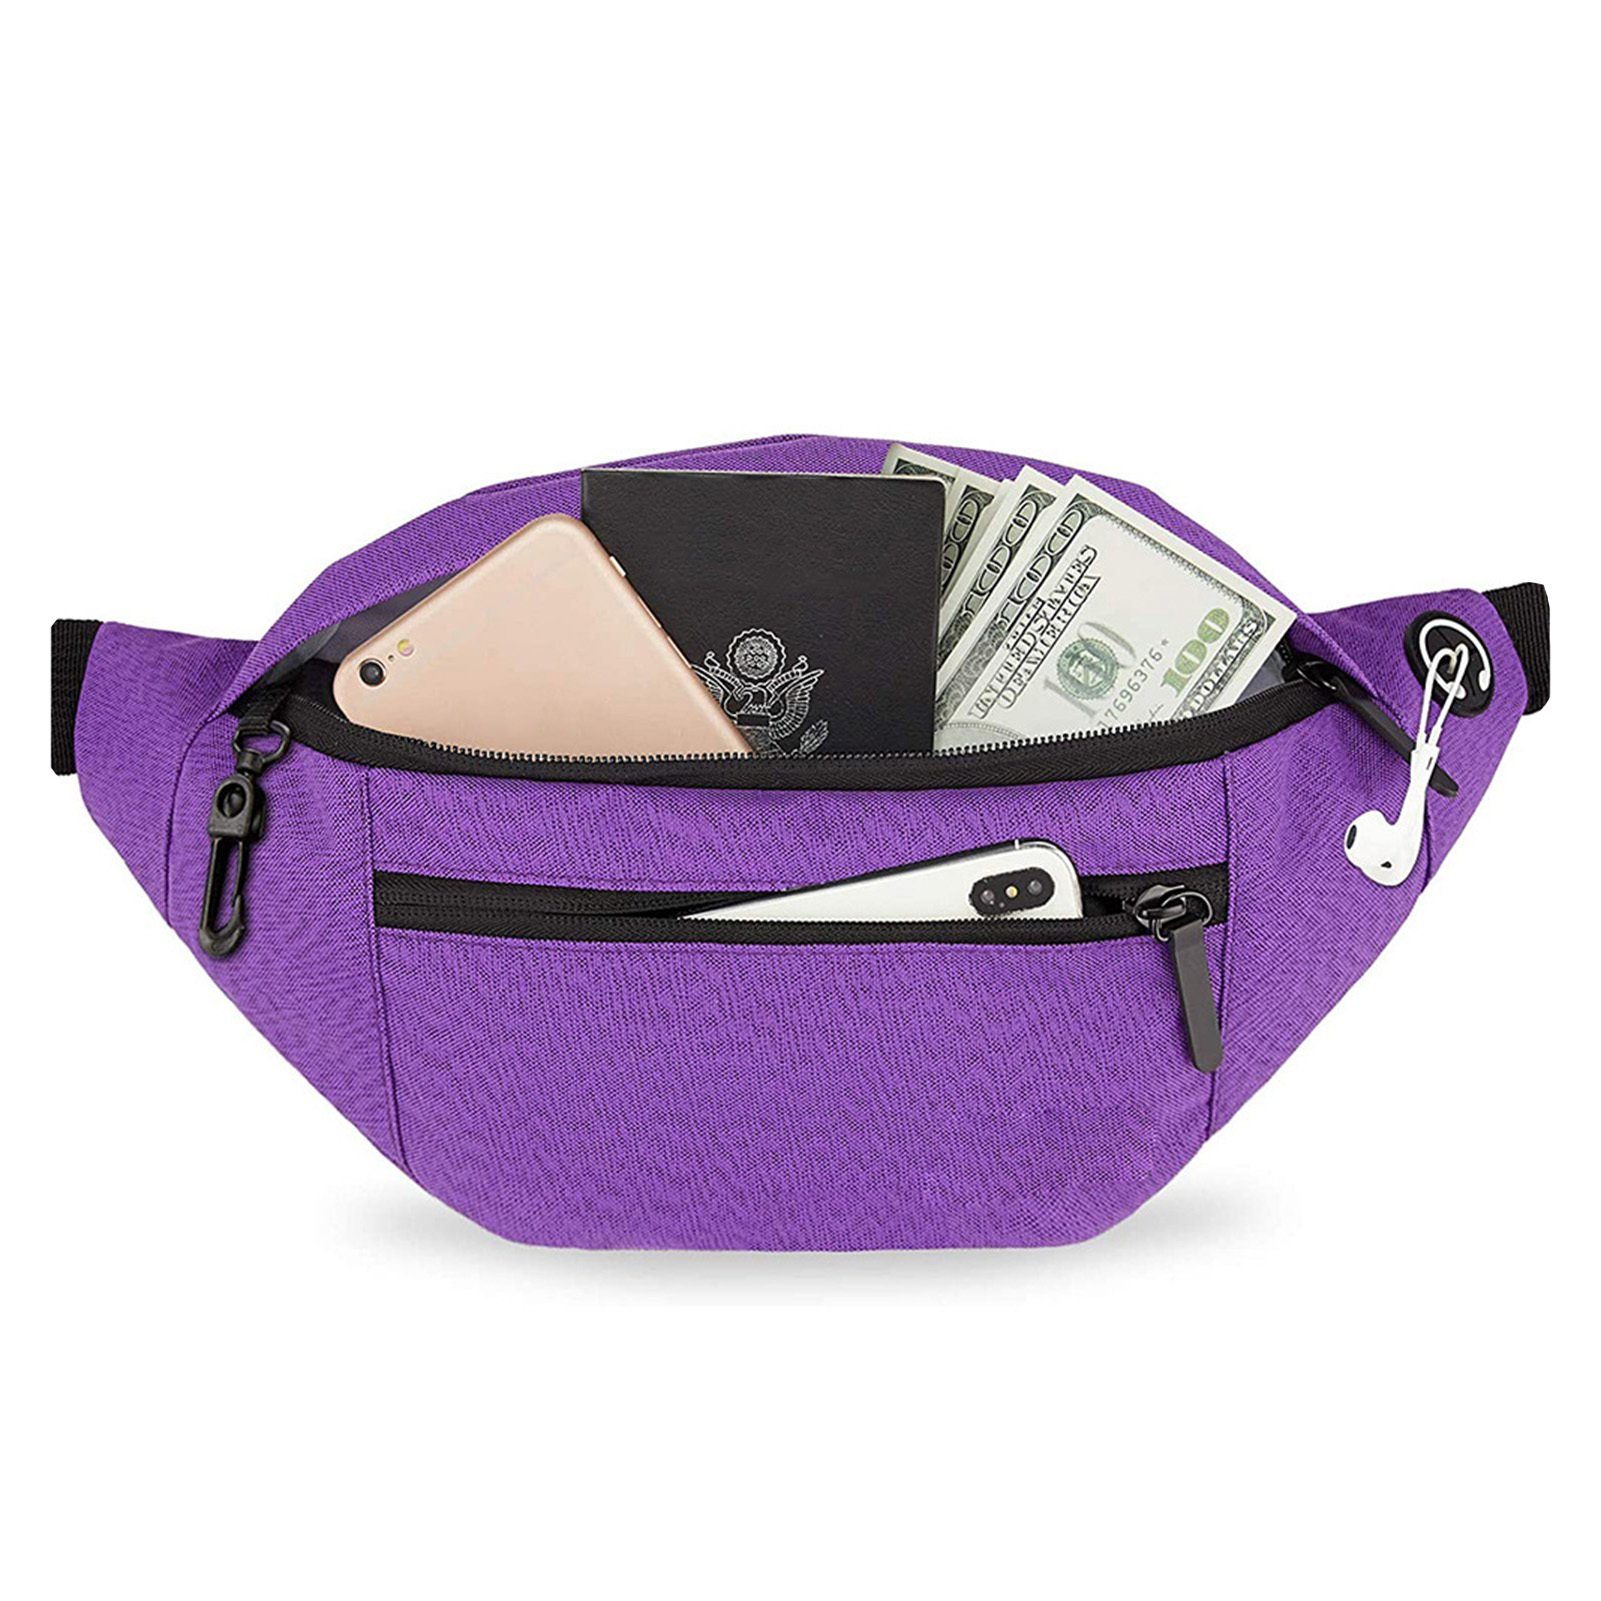 Blusmart Umhängetasche Große Umhängetasche,Tragbare Crossbody Bag,Brusttasche, Schultertasche purple